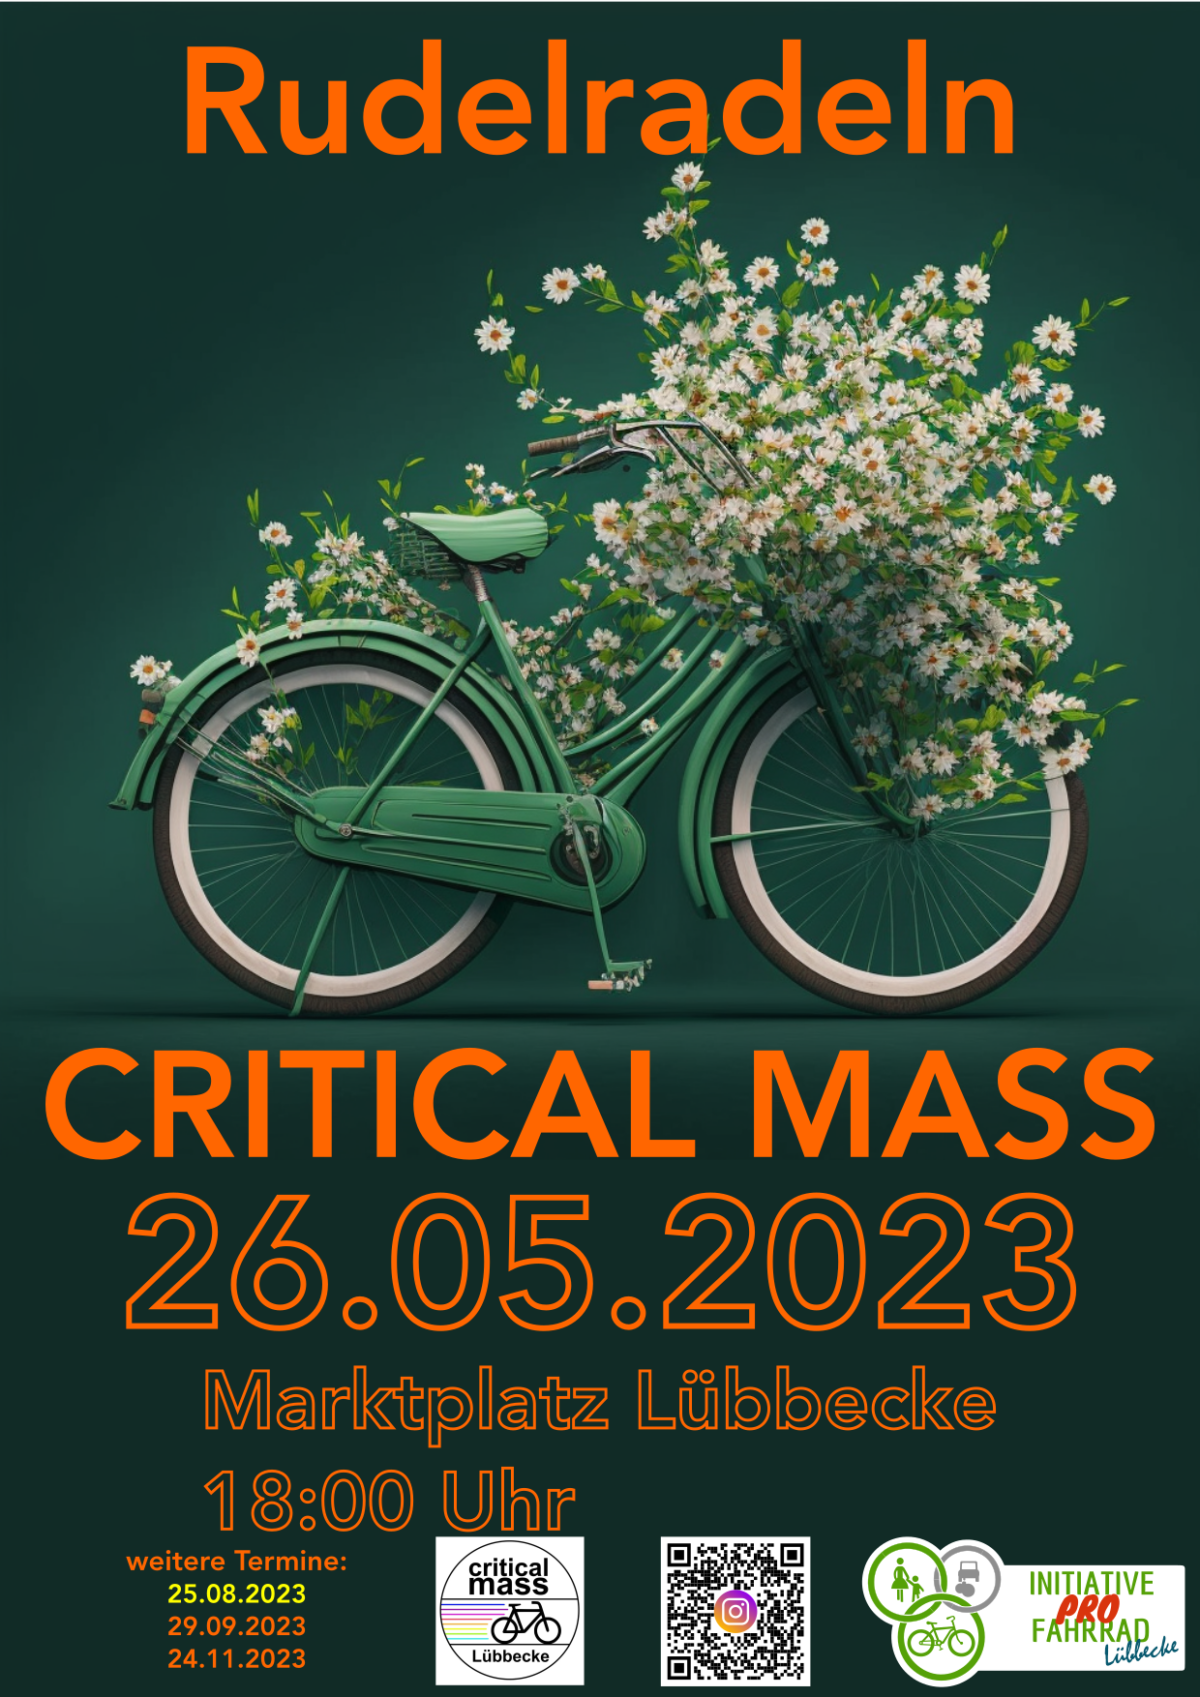 Plakat mit Fahrradmotiv mit Aufruf zum Rudelradeln am 26.05.2023